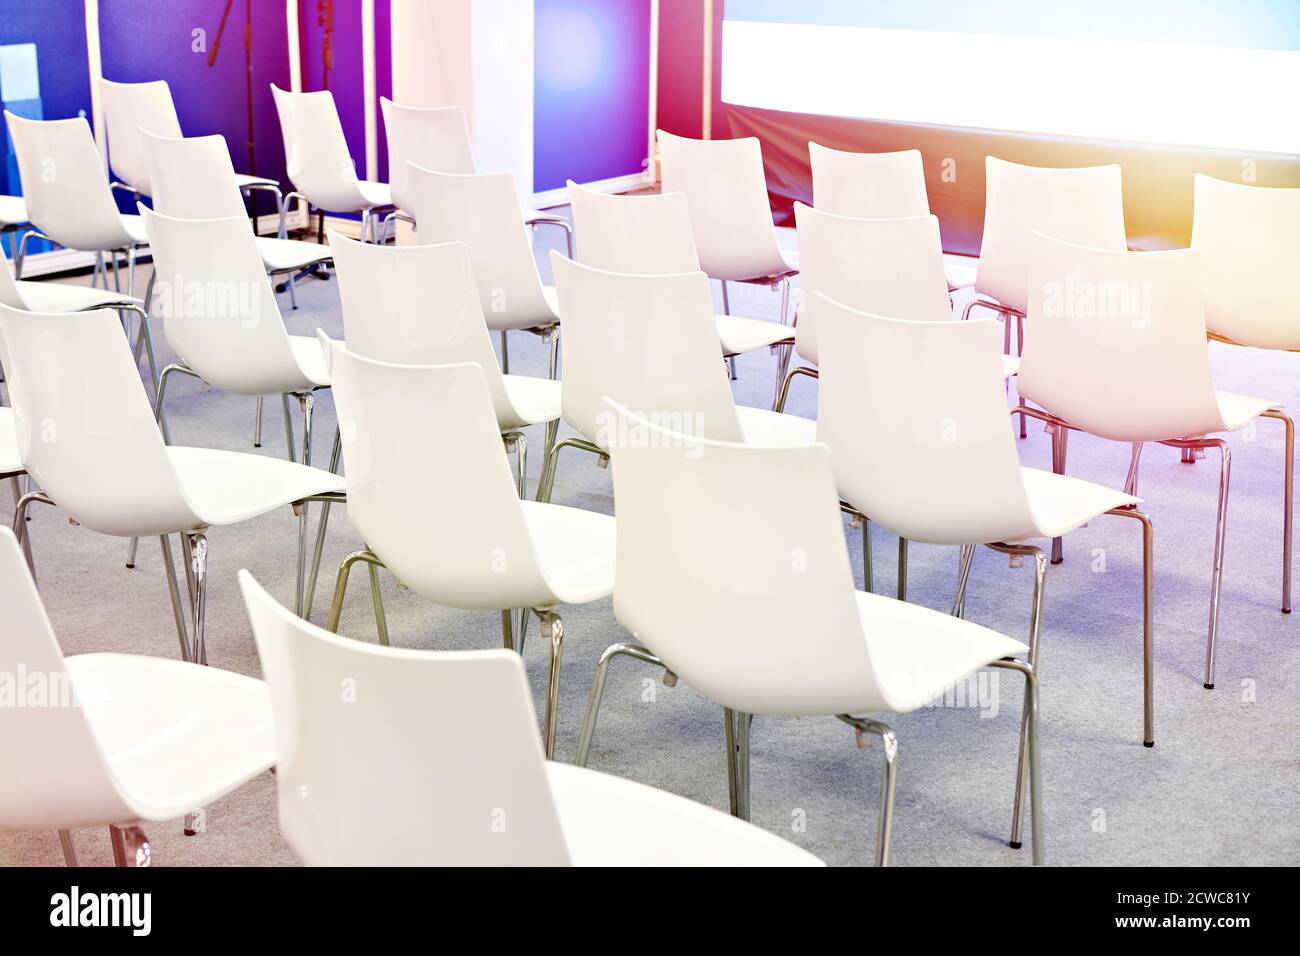 Sillas blancas de la moderna sala de conferencias de negocios Foto de stock